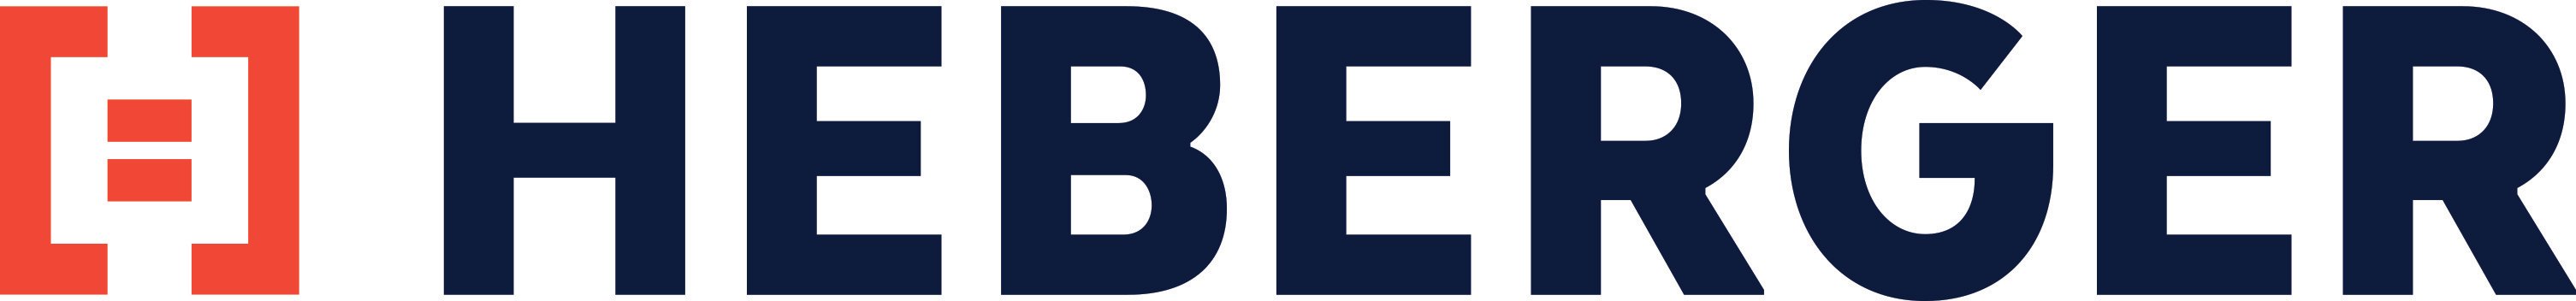 HEBERGER logotype